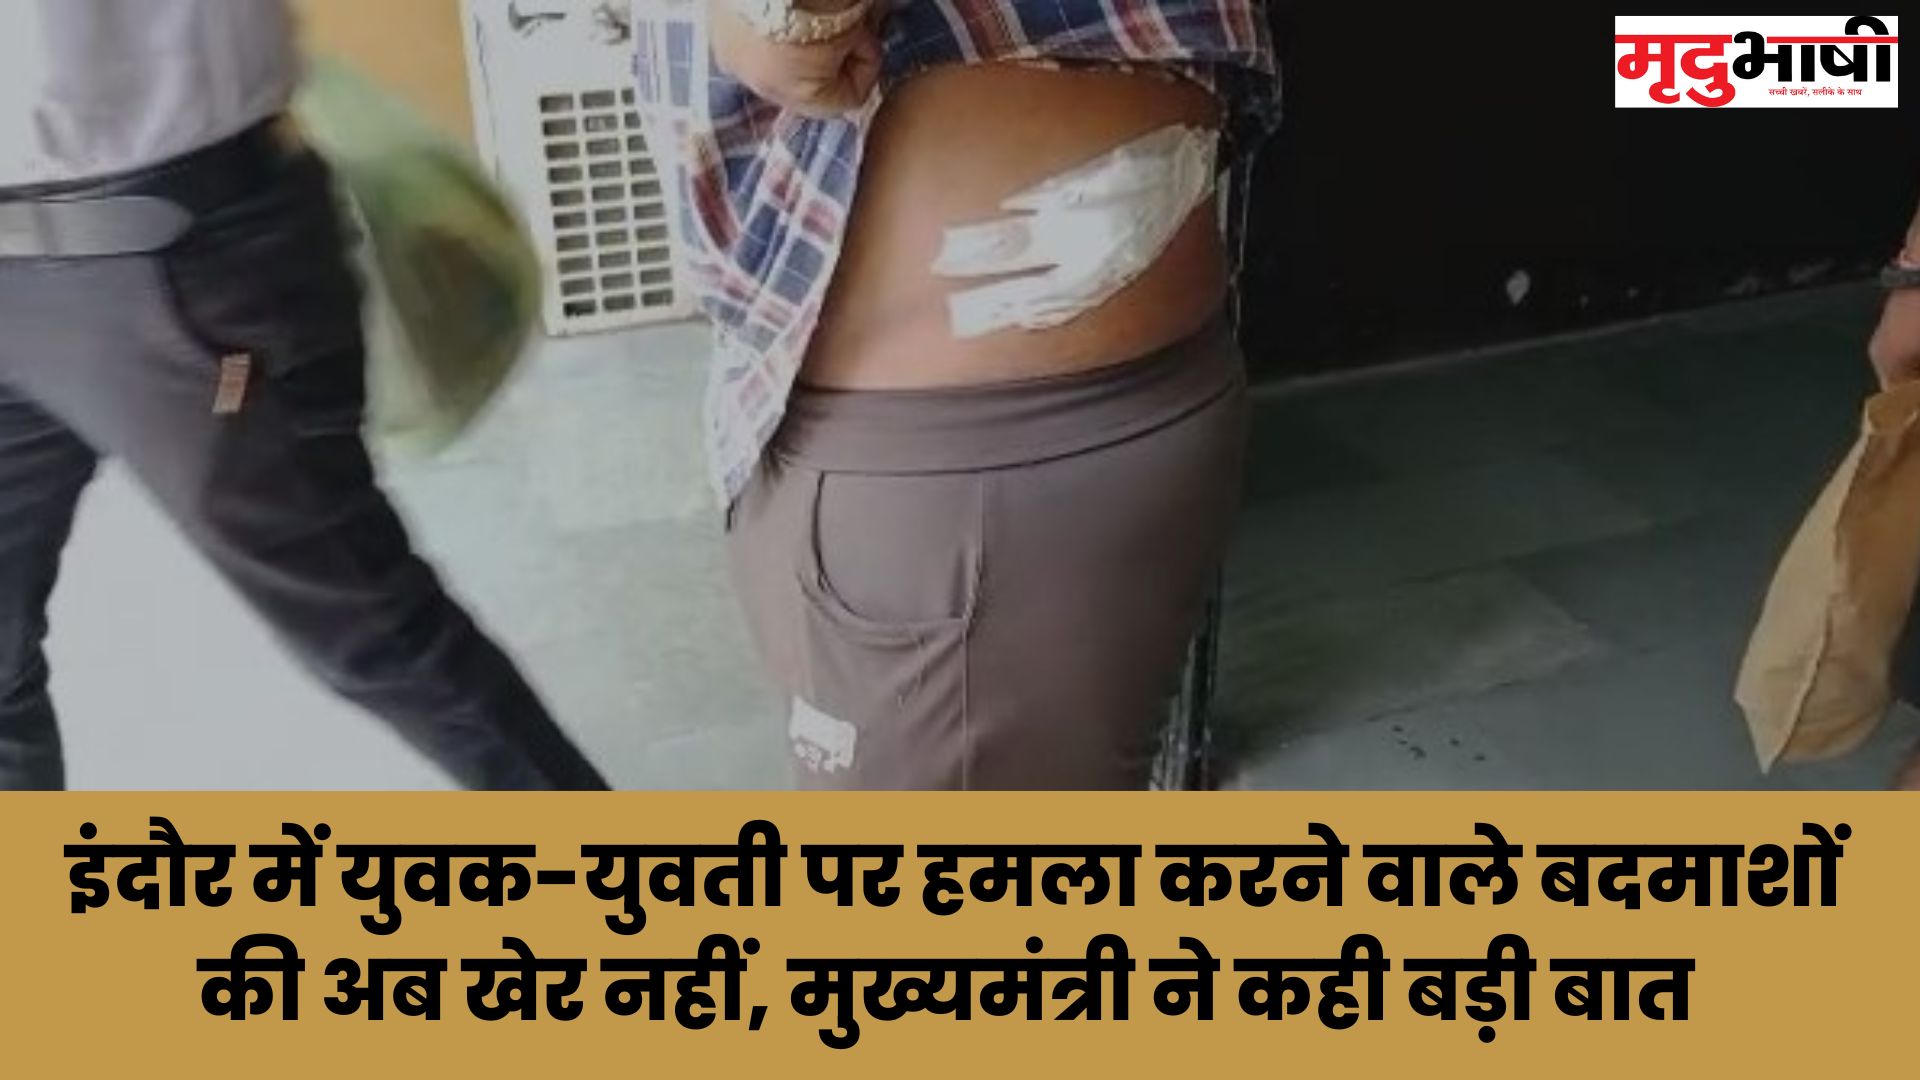 इंदौर में युवक-युवती पर हमला करने वाले बदमशों की अब खेर नहीं, मुख्यमंत्री ने कही बड़ी बात